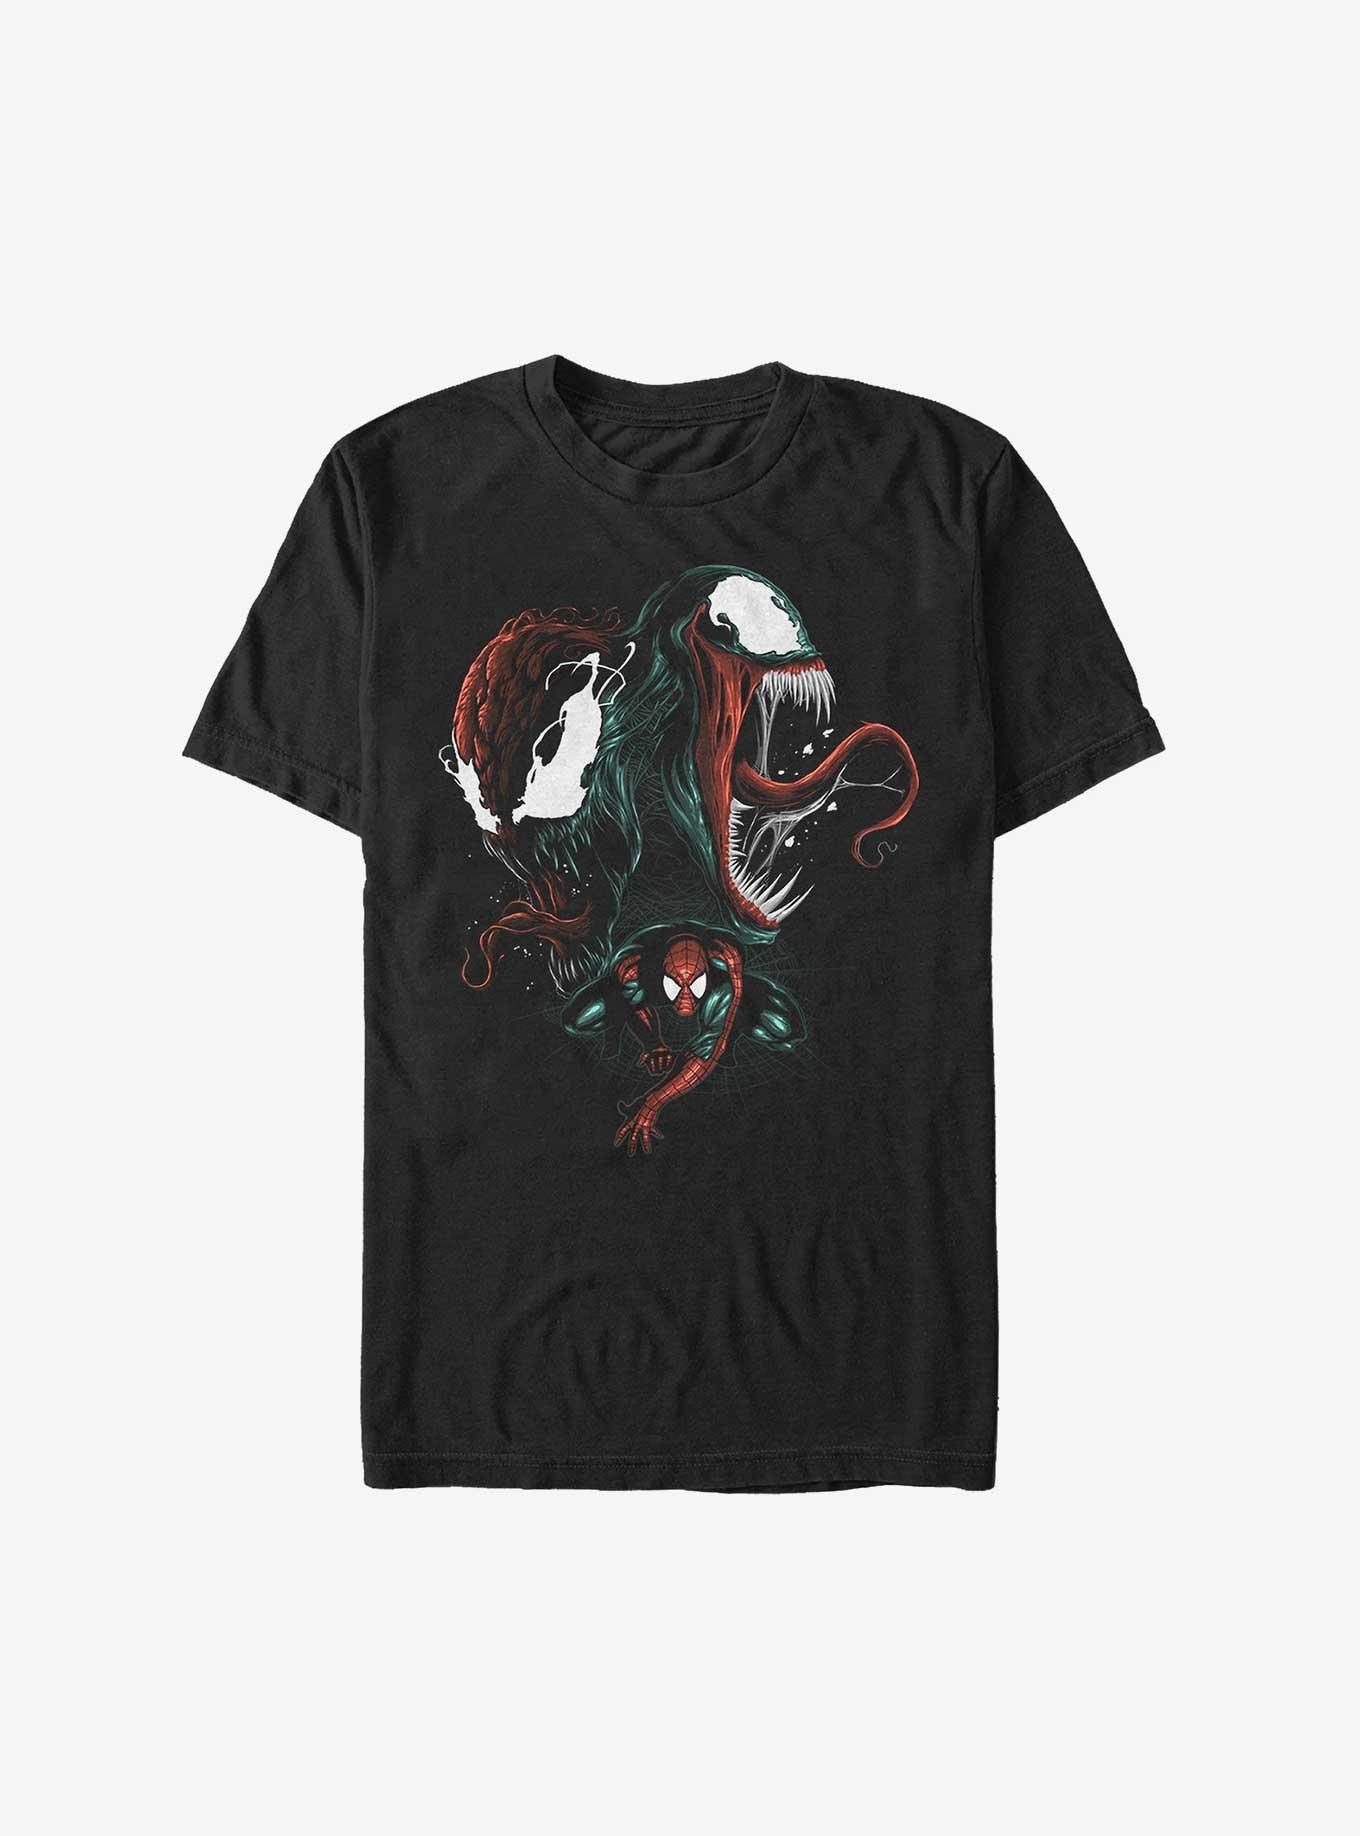 Extra Soft Marvel Venom Bad Conscience T-Shirt